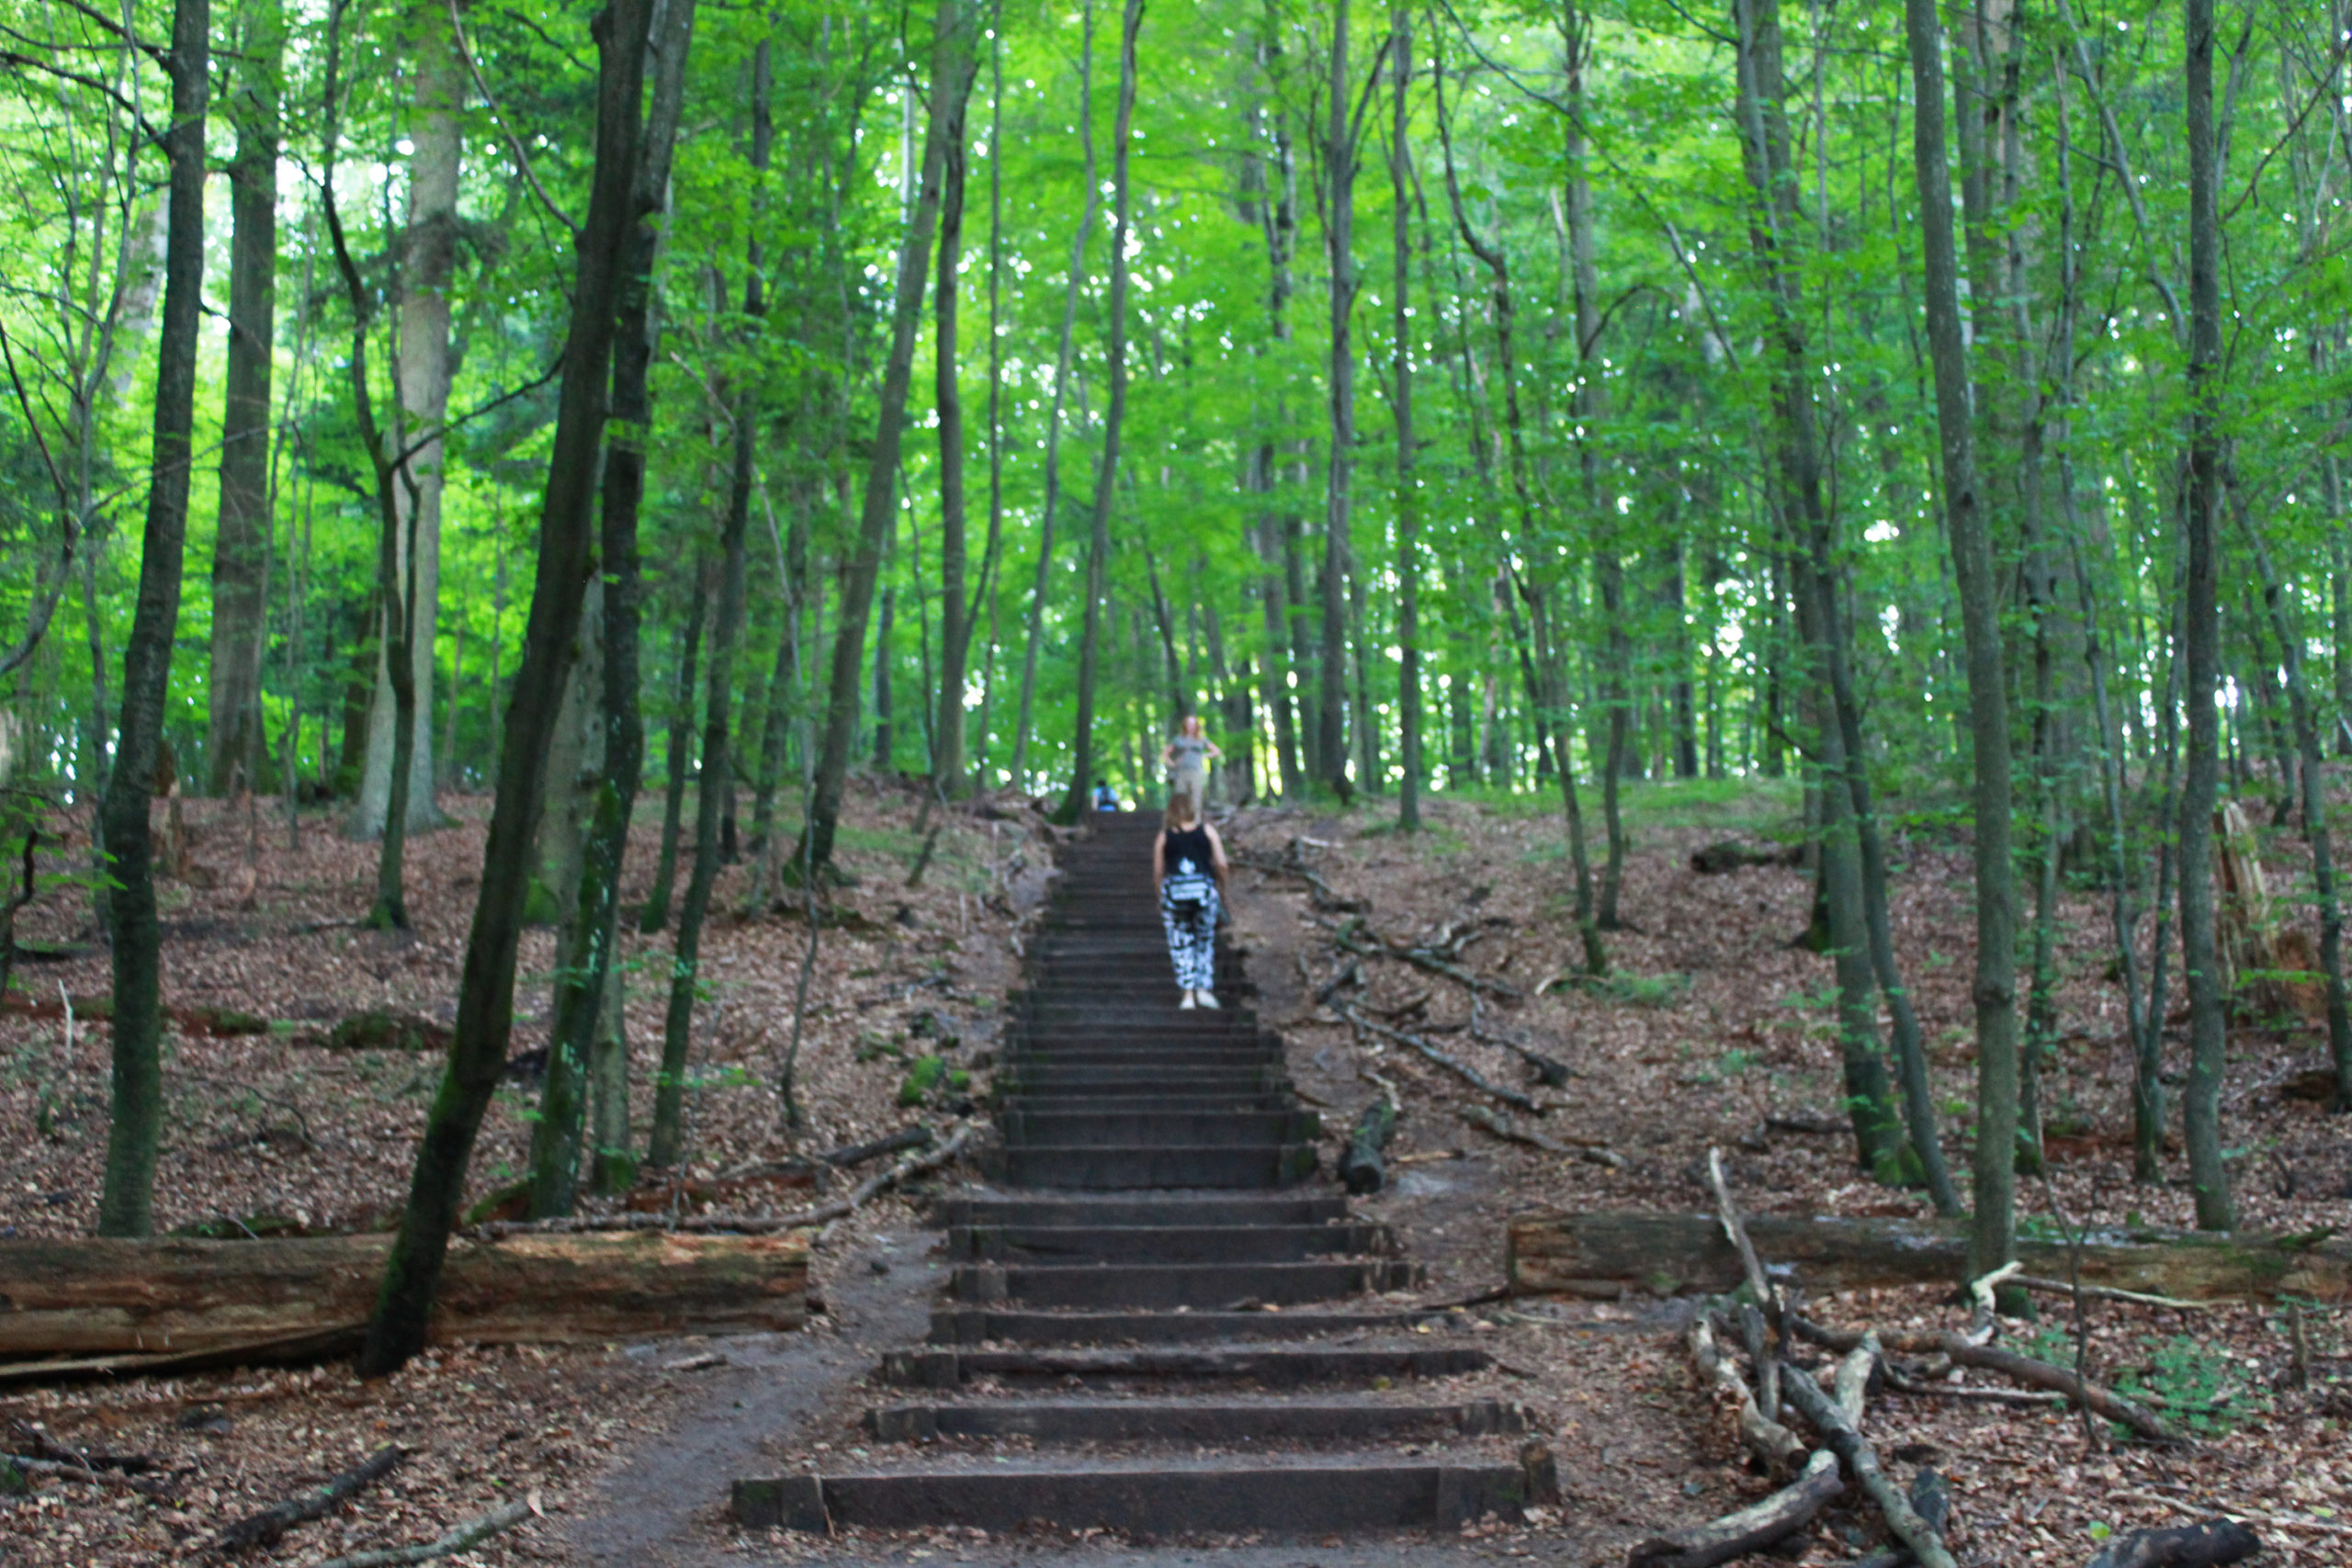 schody w lesie